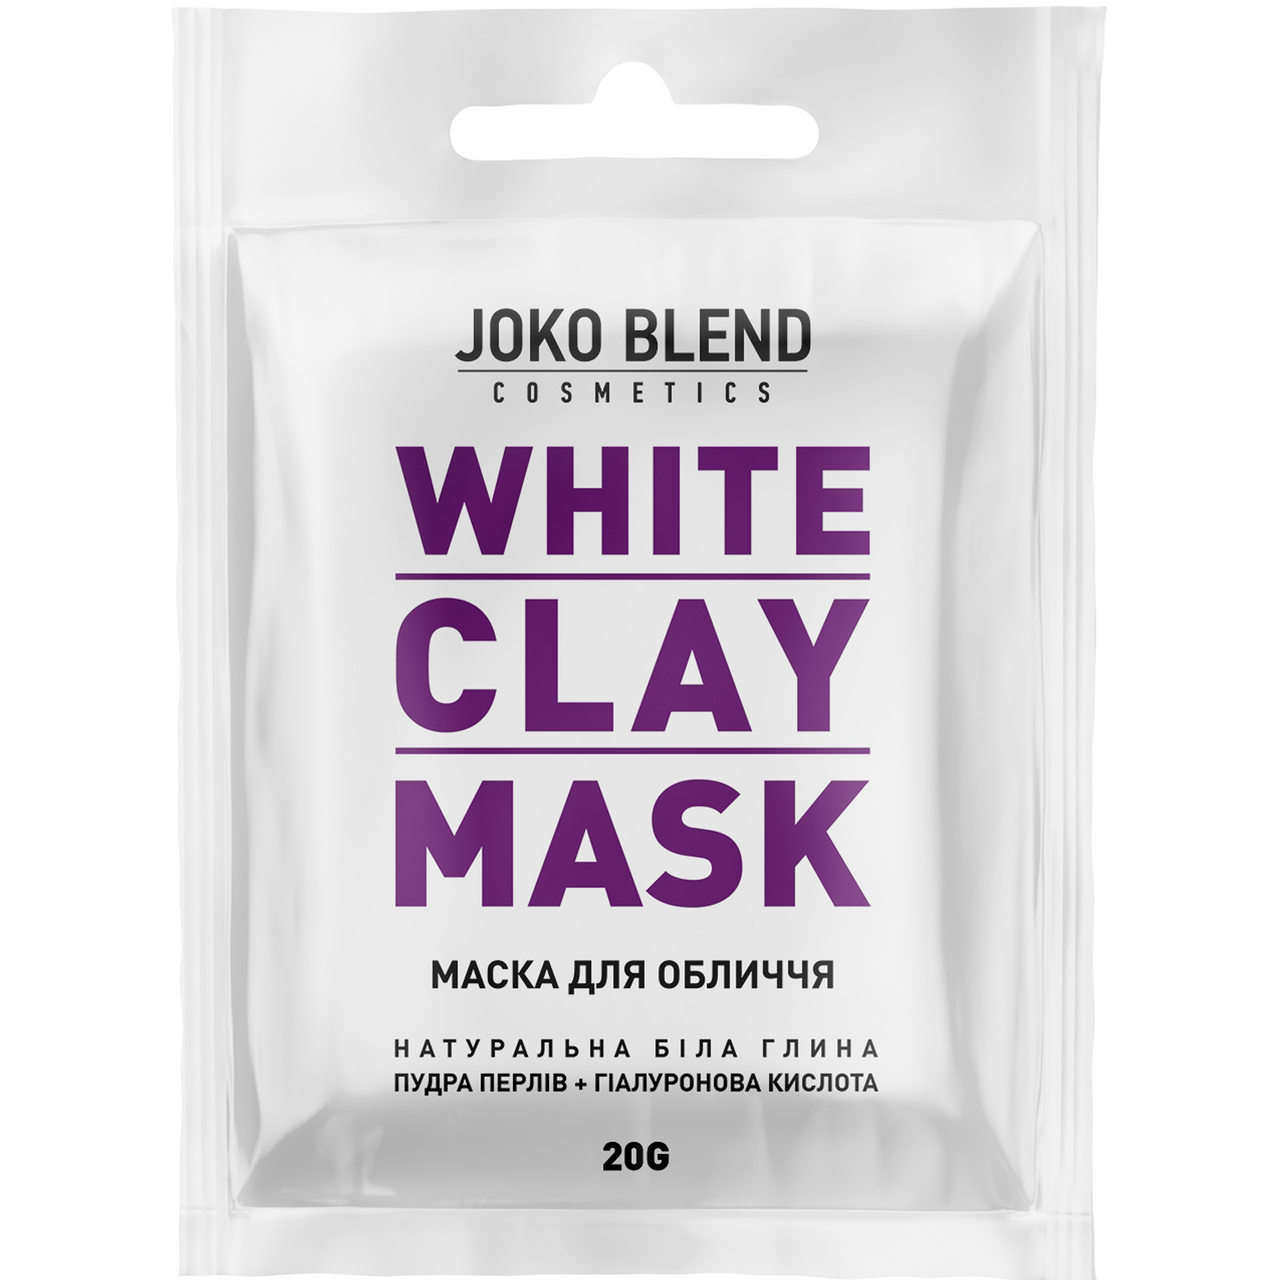 Біла глиняна маска для обличчя White Clay Mask Joko Blend, 20 г